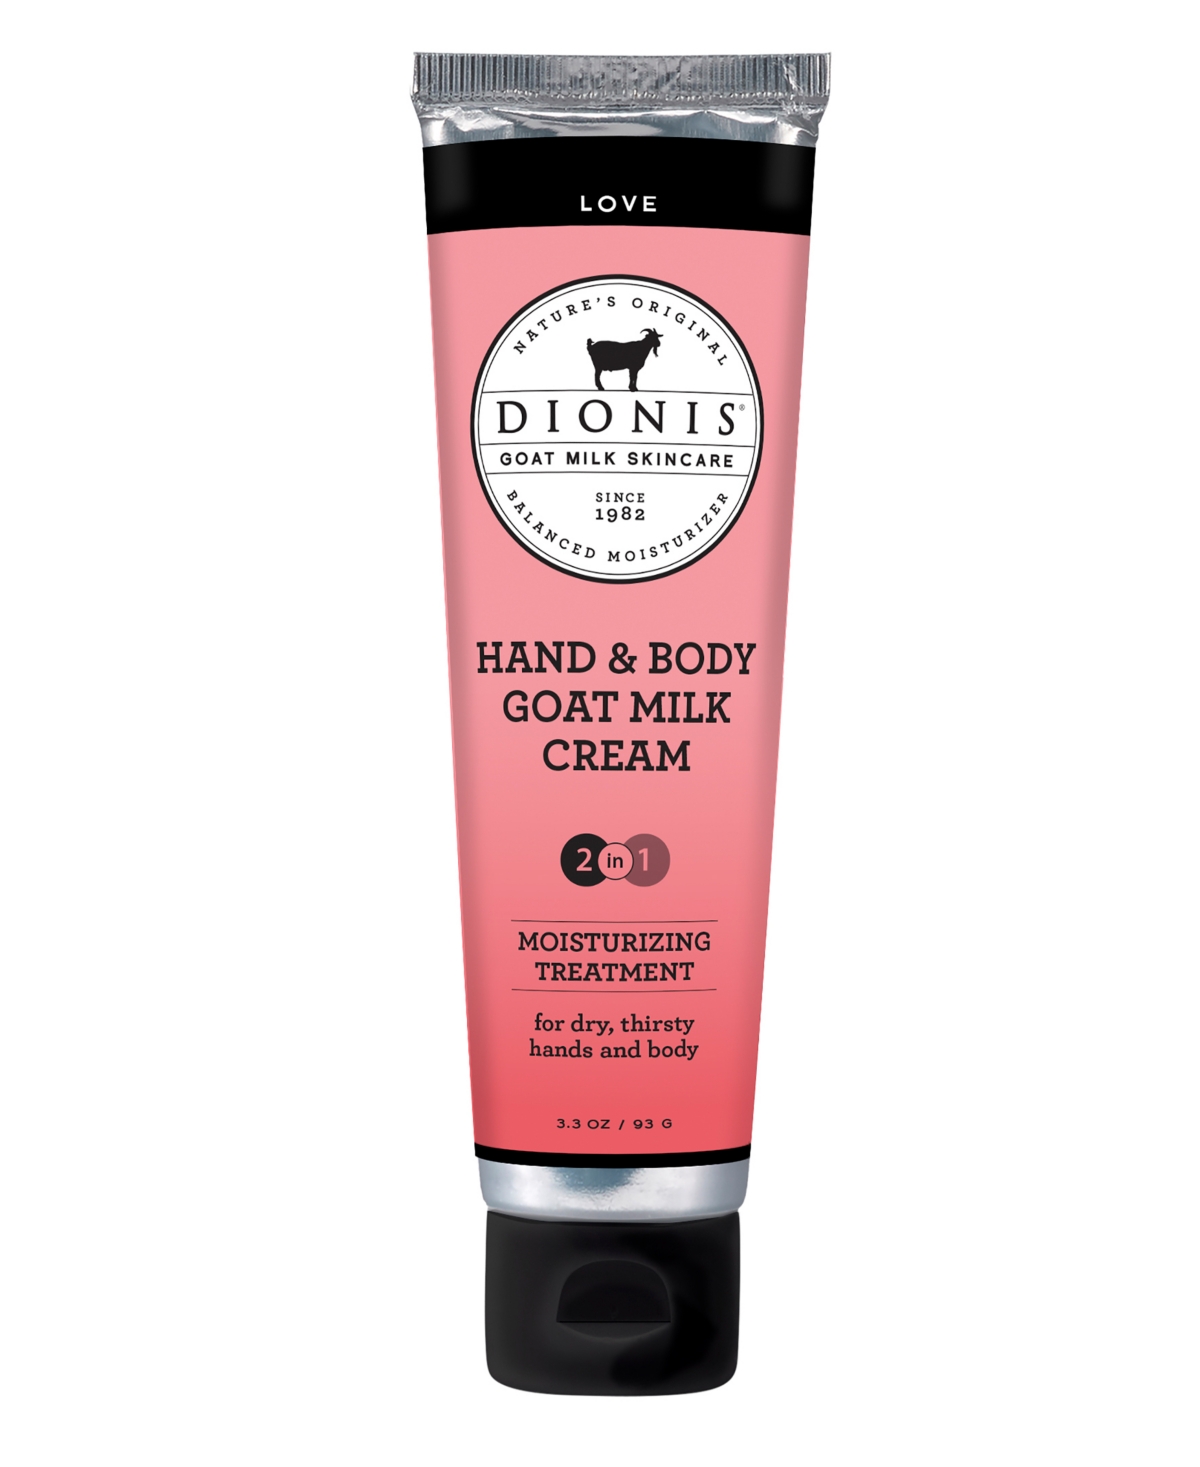 Hand & Body Goat Milk Cream - Love